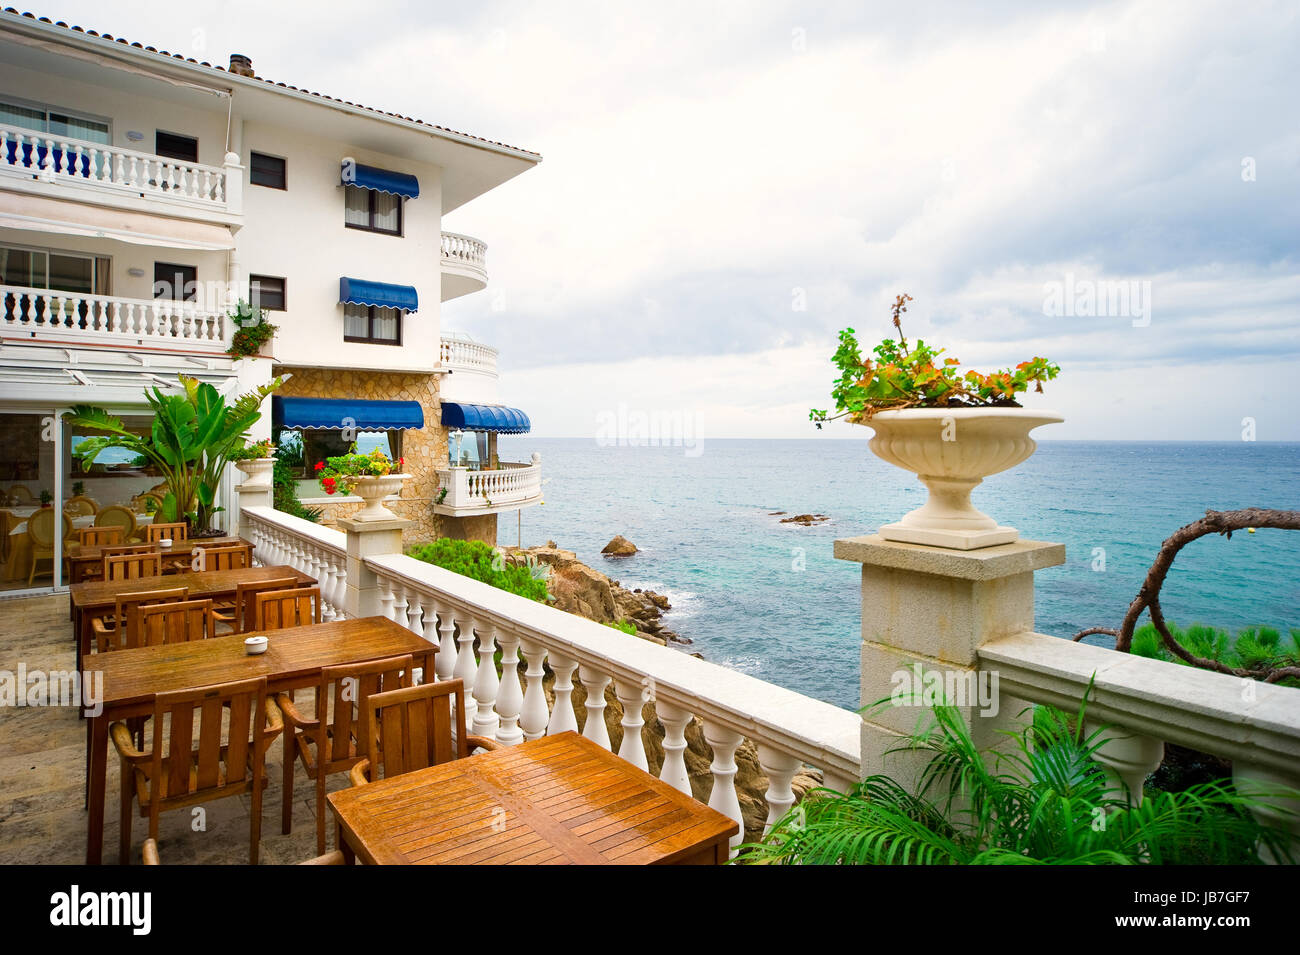 Très bel hôtel près de la mer Méditerranée en Espagne Banque D'Images